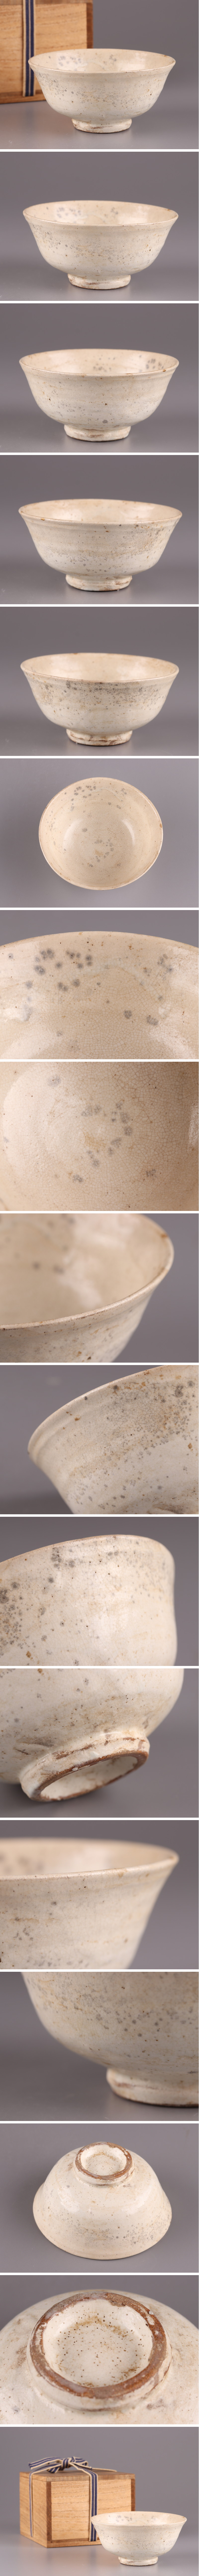 【安い正規品】古美術 朝鮮古陶磁器 李朝 白磁 雨漏 茶碗 古作 時代物 初だし品 3509 李朝